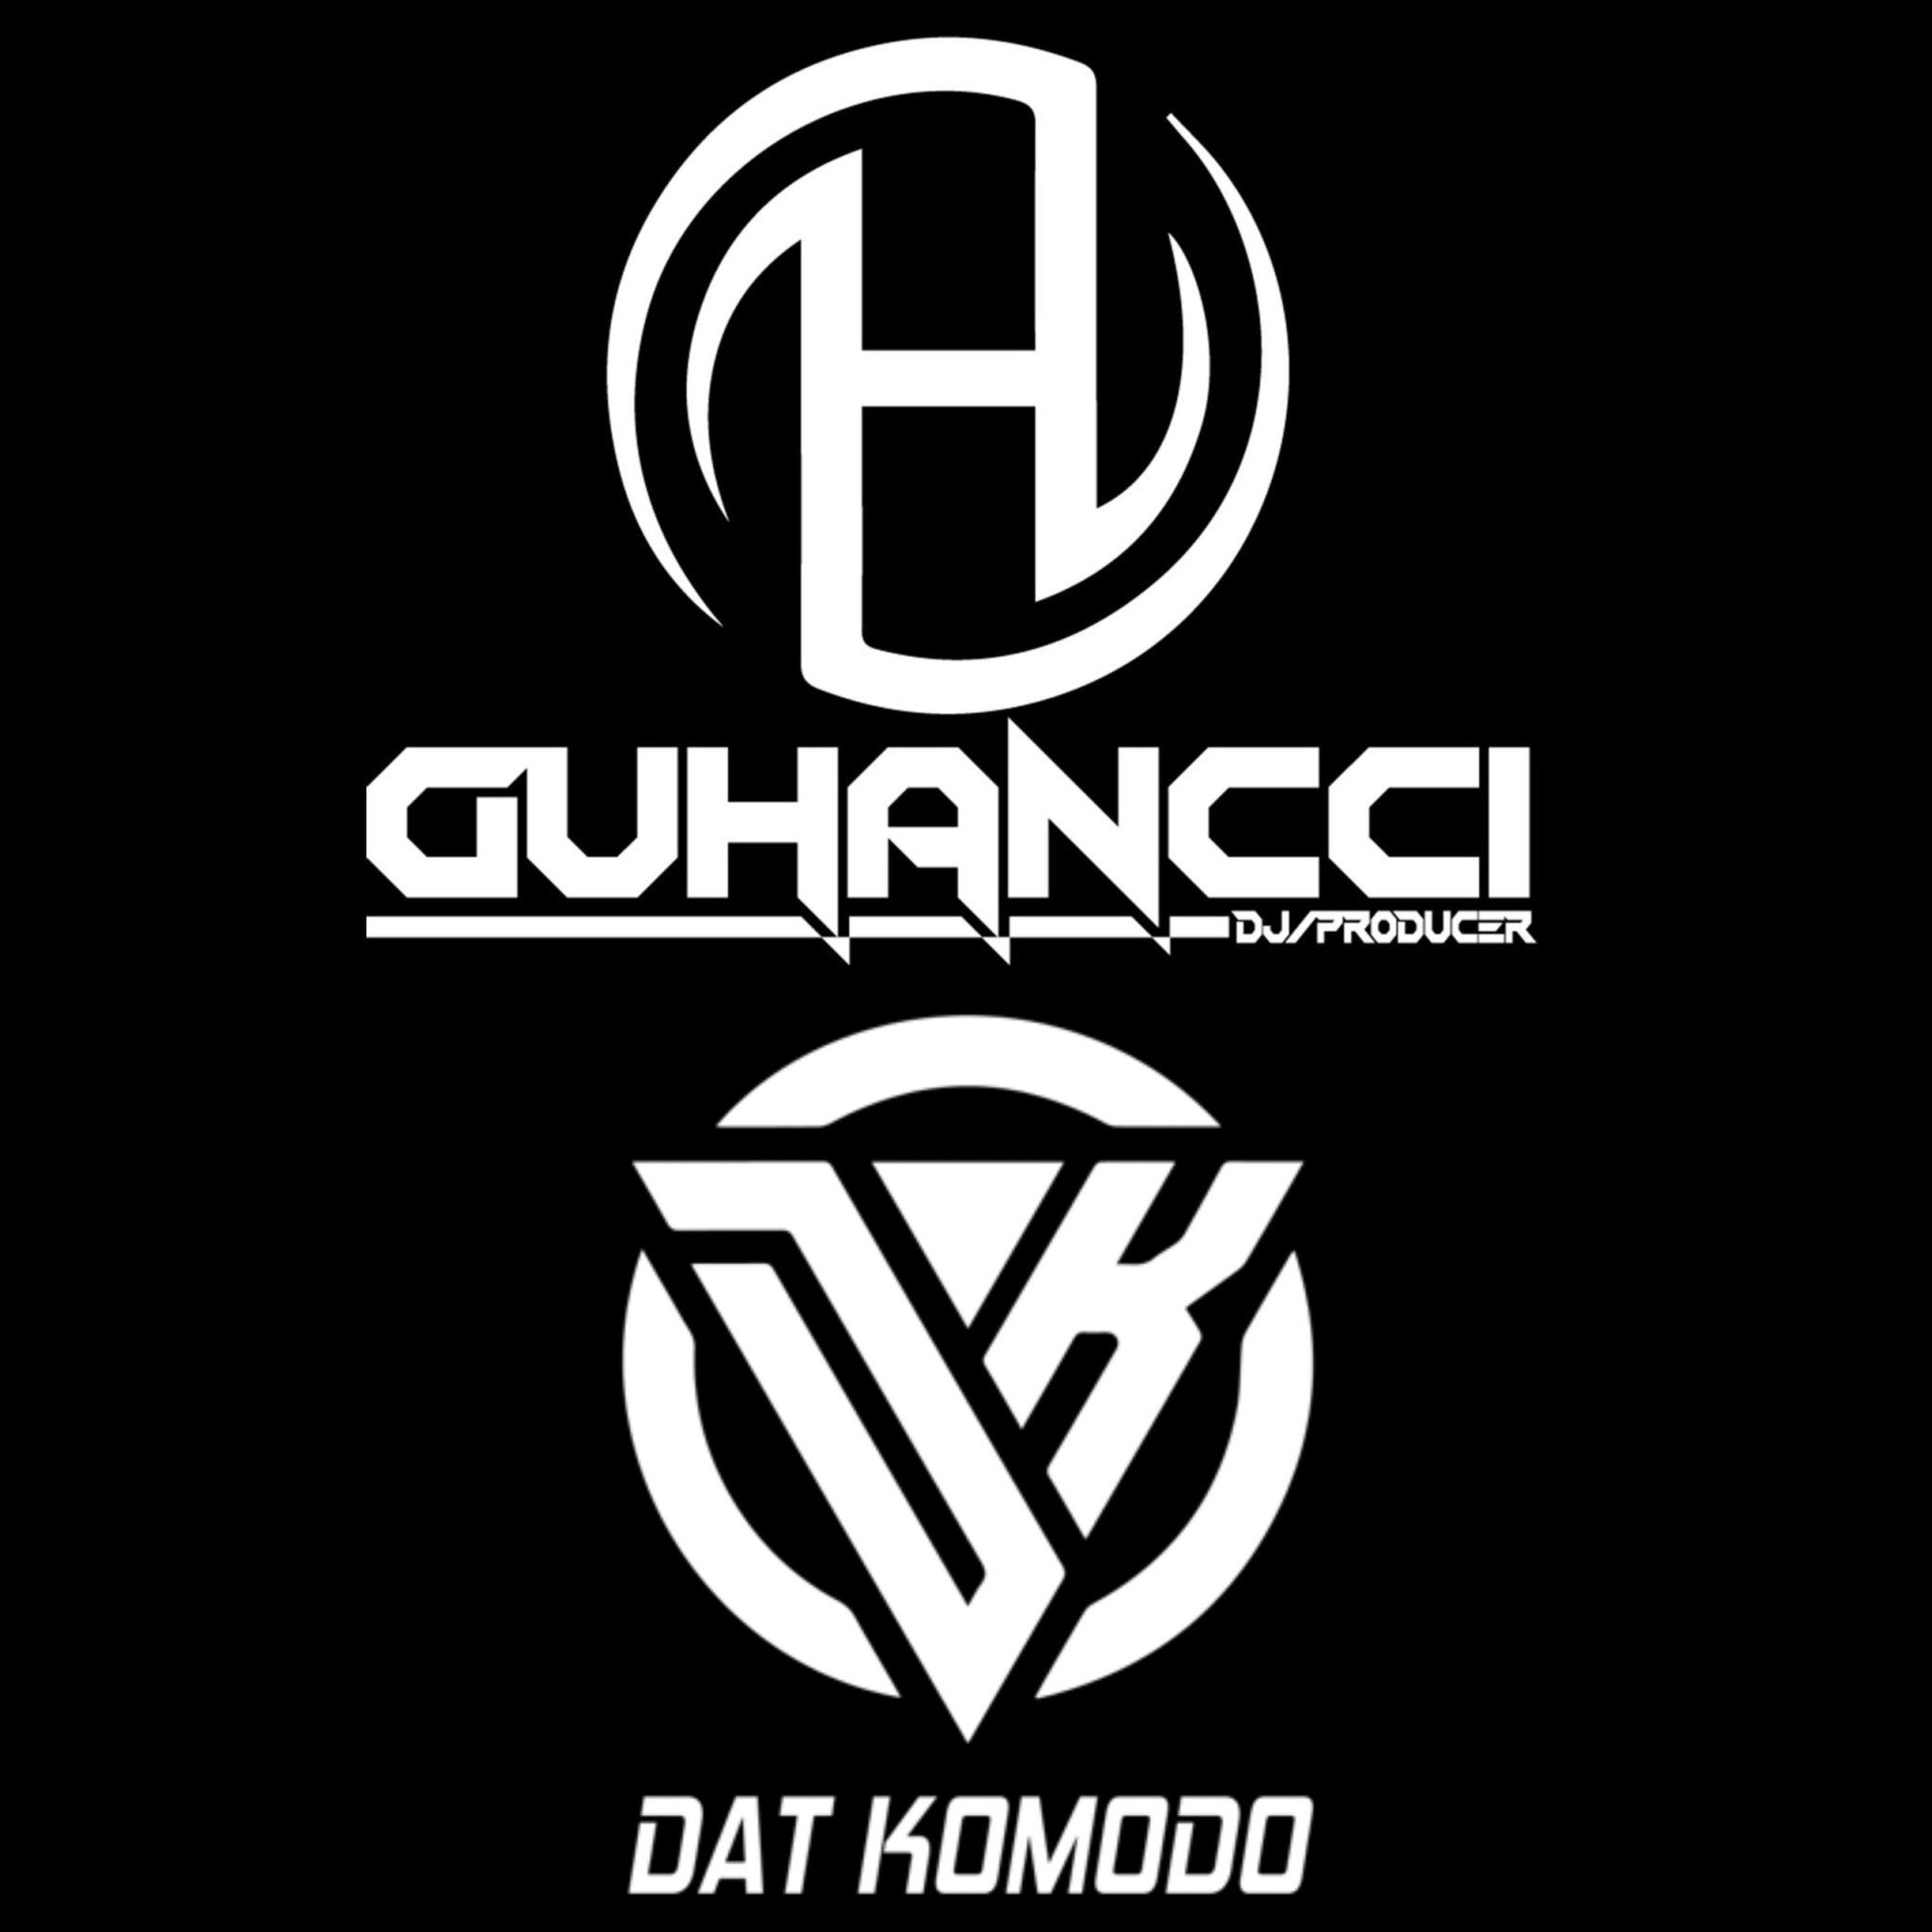 ဒေါင်းလုပ် Express Music - DatKomodo ft guHancci (guHancci Team)